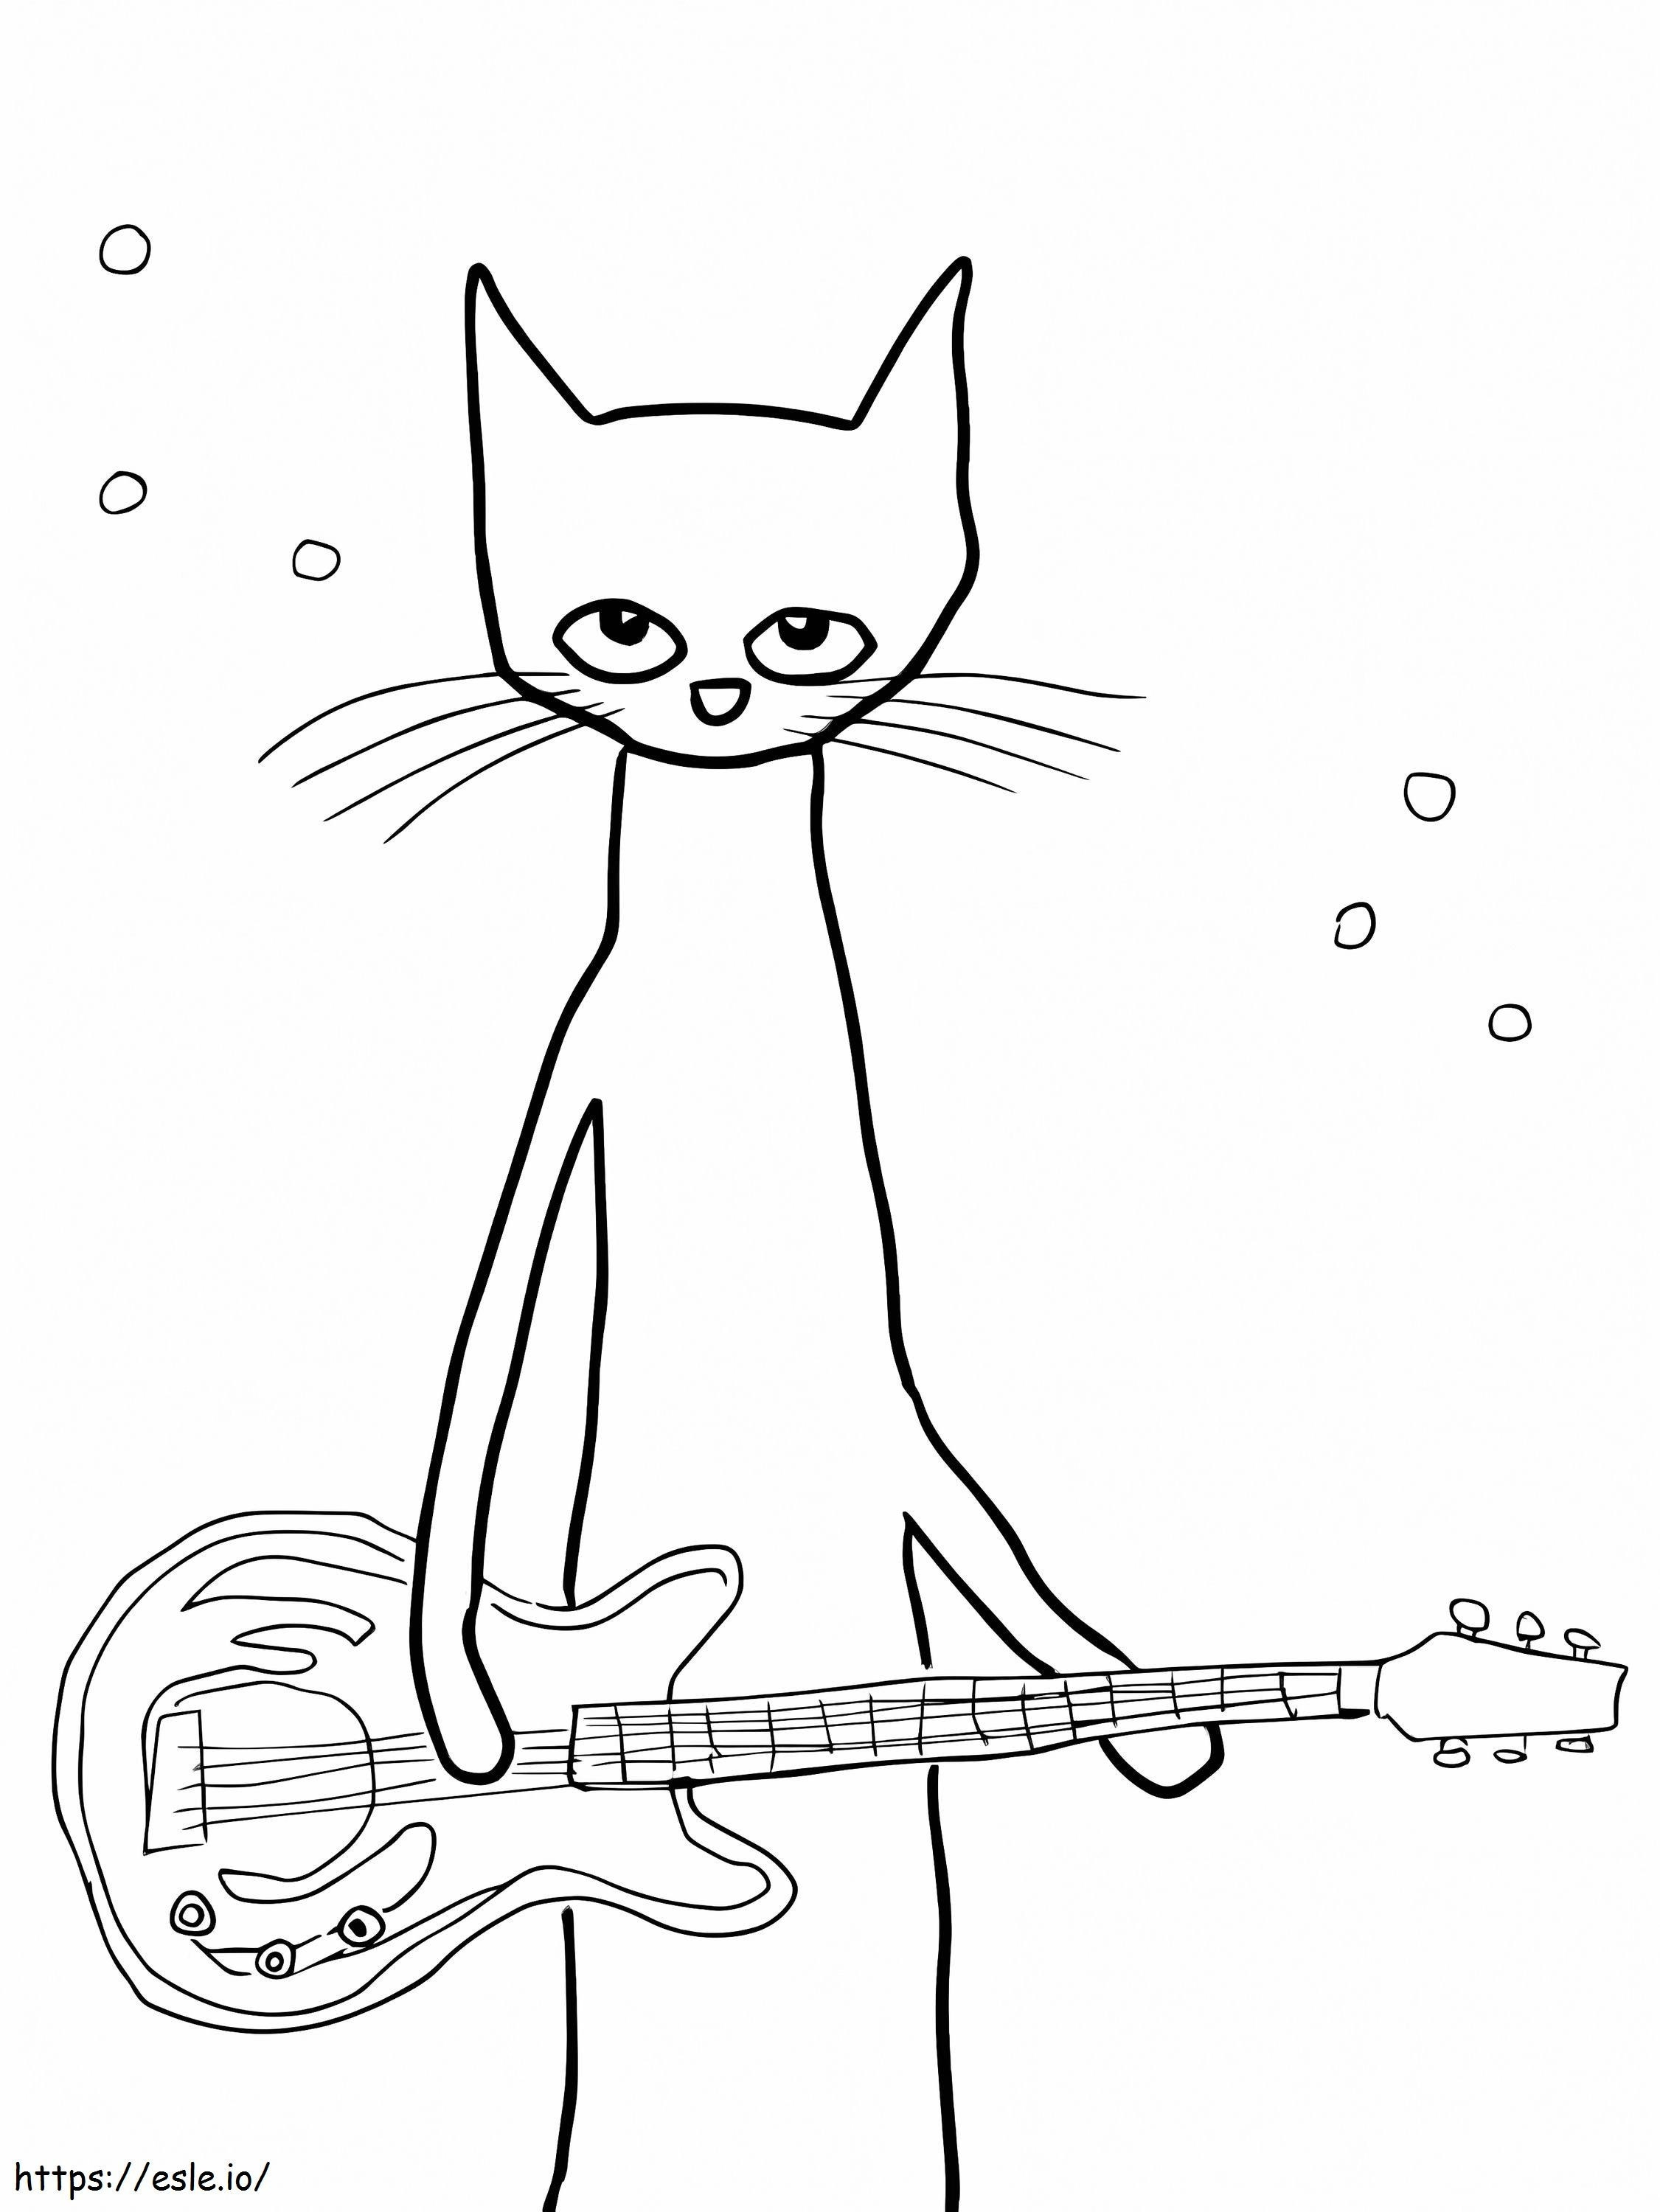 O guitarrista Pete o gato para colorir